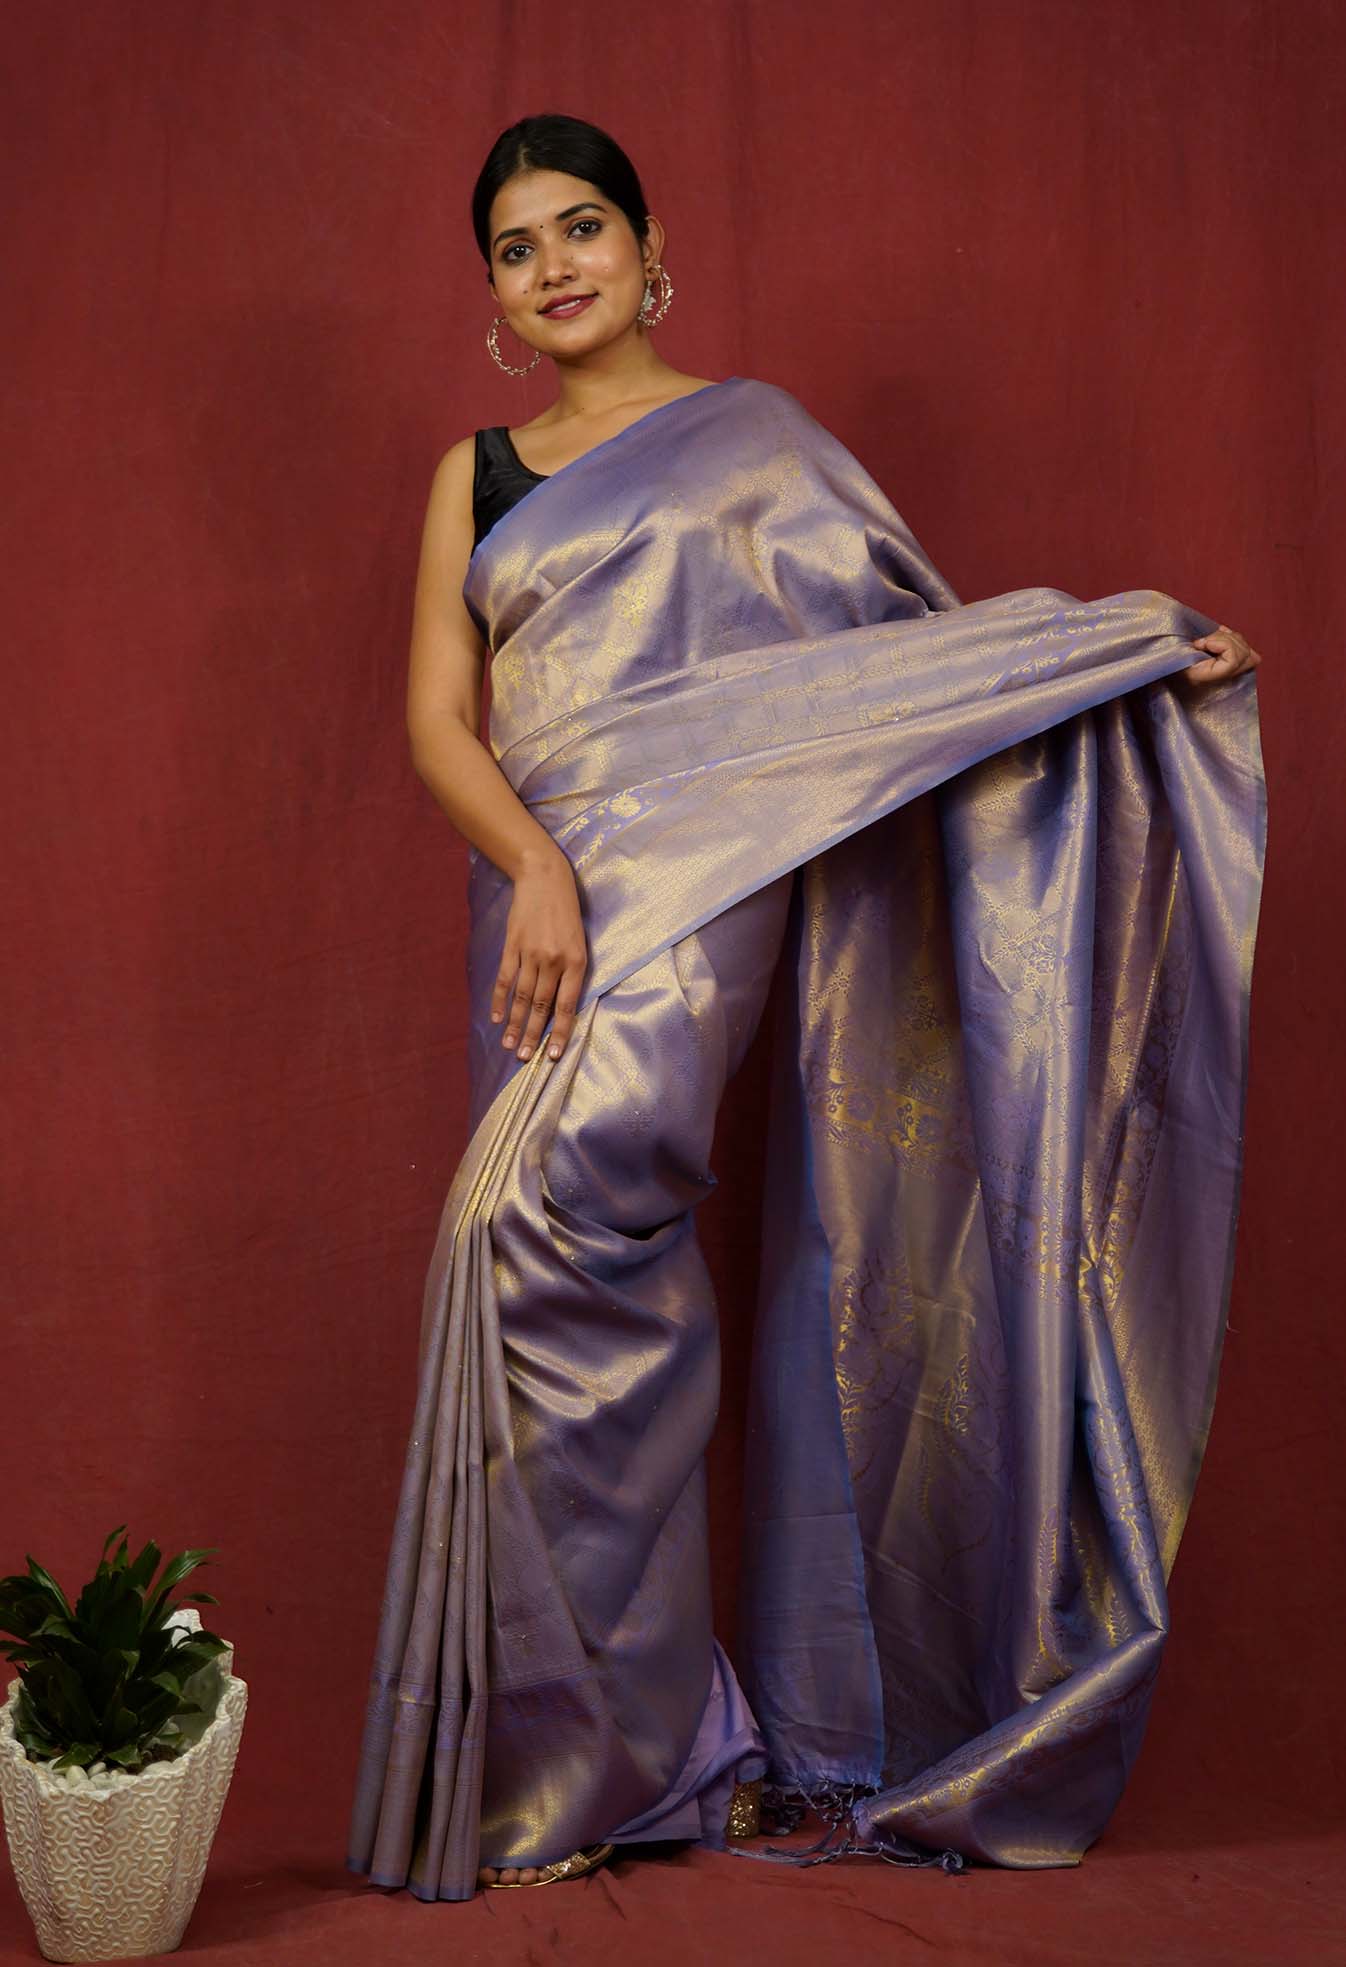 Kurti from saree | Old saree reuse ideas | Old saree into long gown | Old  saree dress​ #oldsaree - YouTube